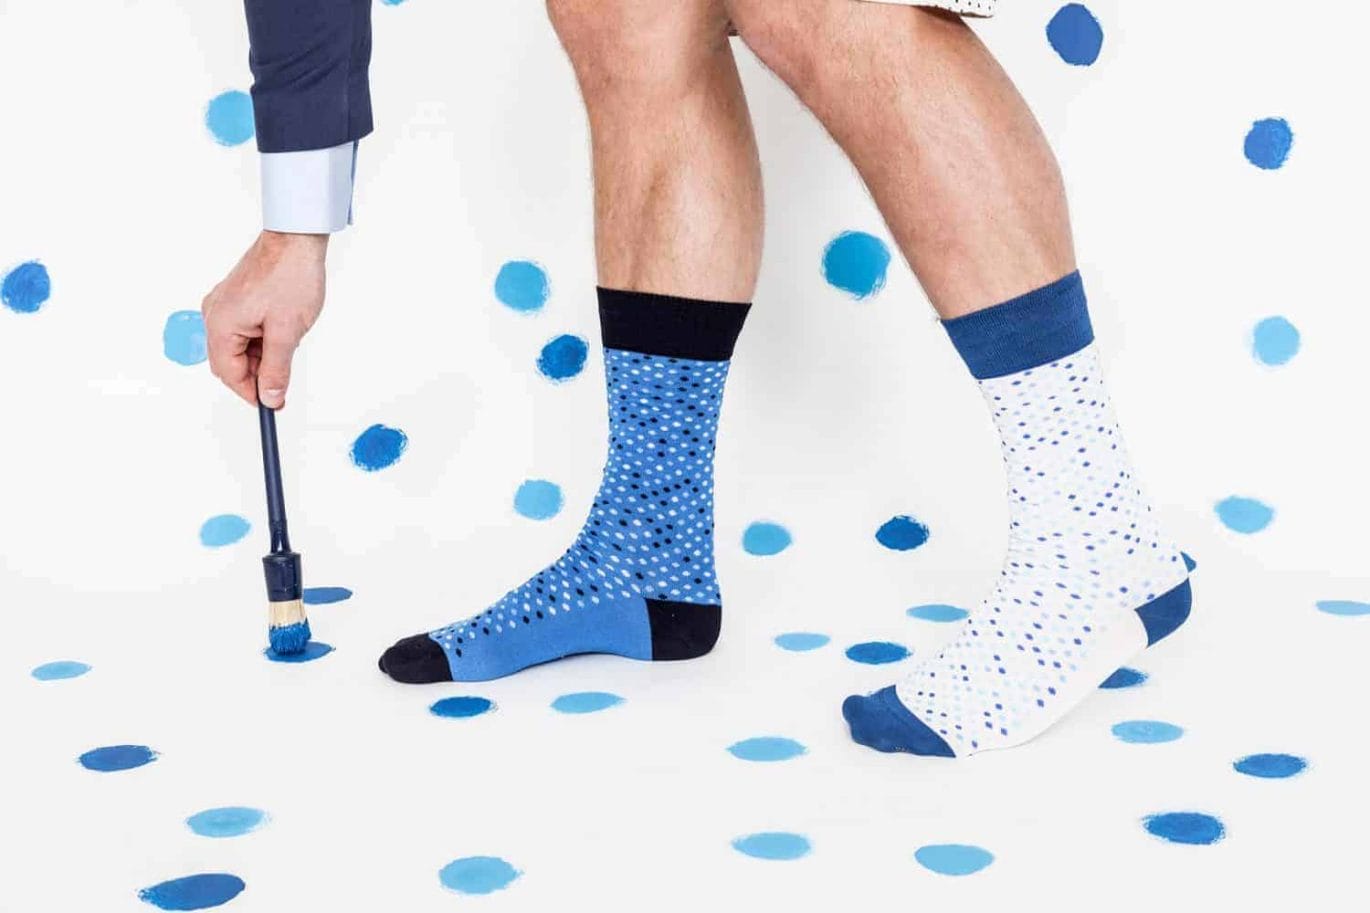 Antoine Peters ontwerpt sokken voor Effio